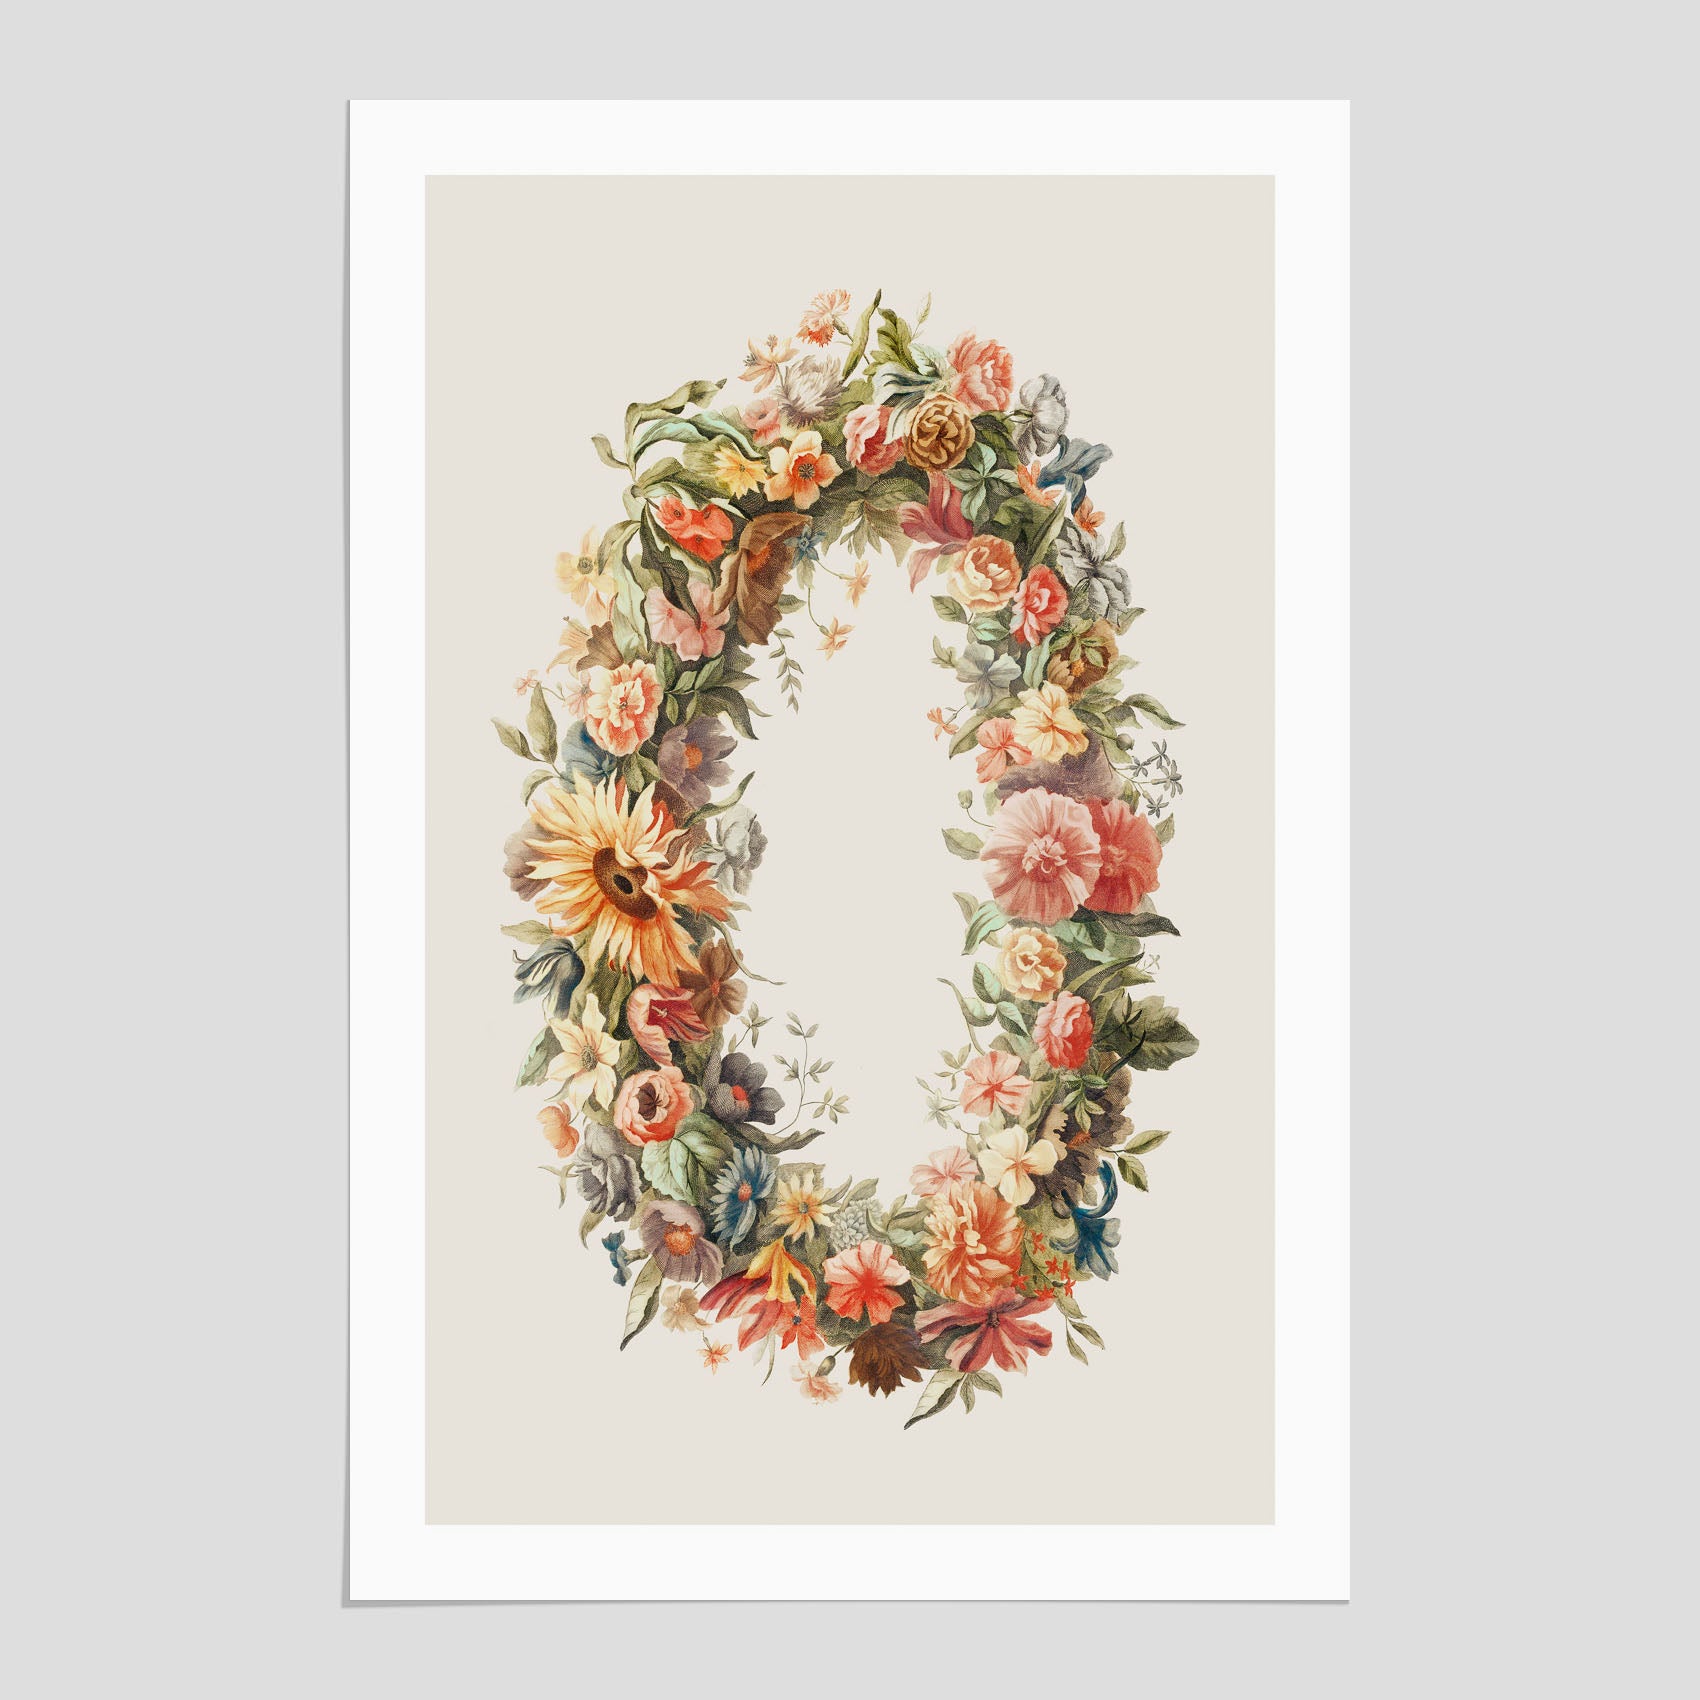 Blomkrans poster  – Botanisk poster, vintageposter med blommor, midsommar